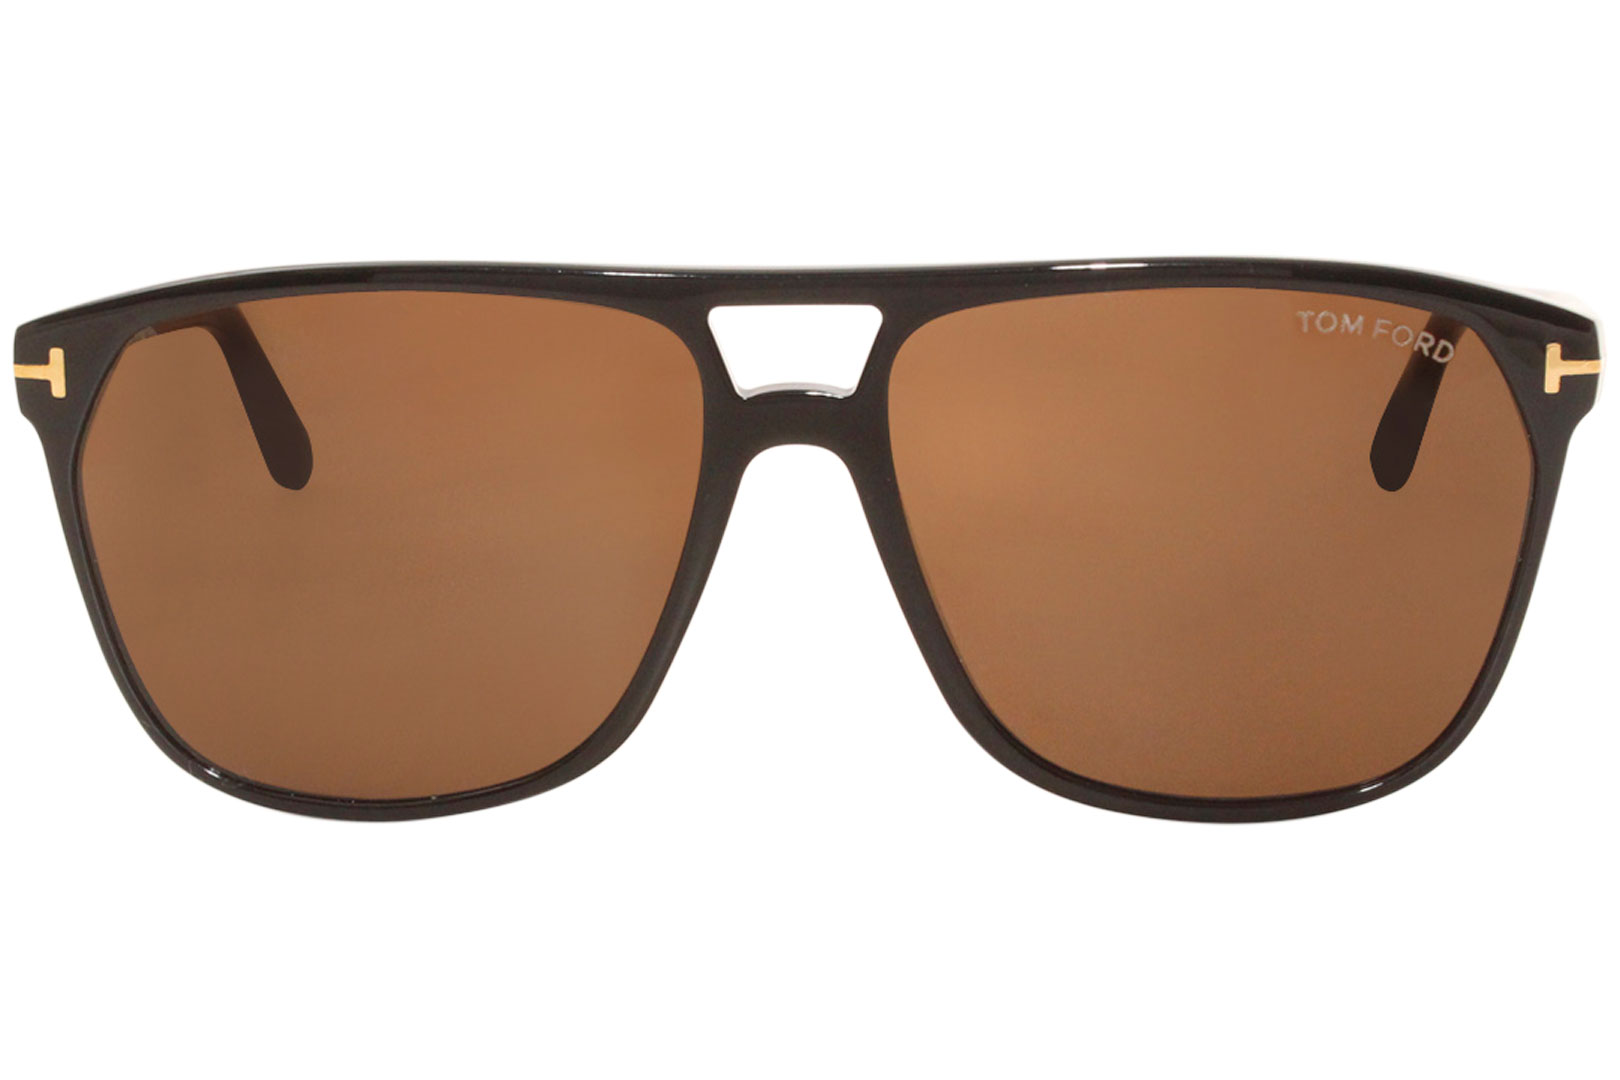 Tom Ford Shelton TF679 01E Sunglasses Men's Shiny Black/Brown Lenses Pilot  59mm 